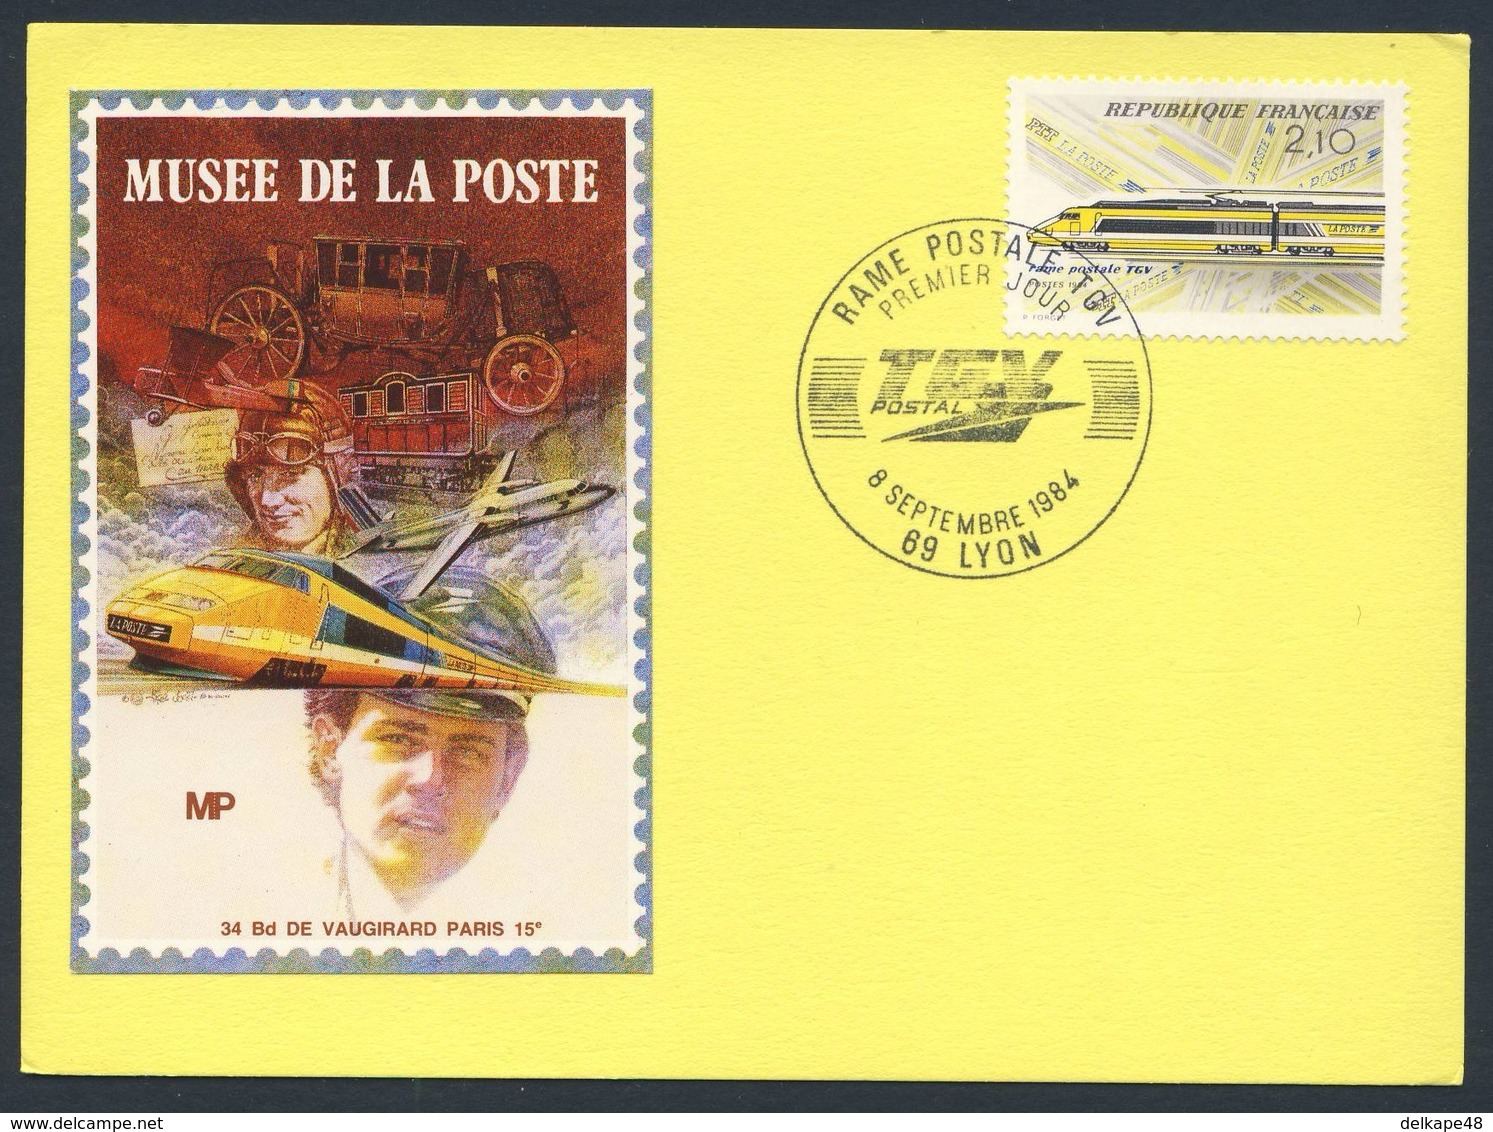 France Rep. Française 1984 Card / Karte / Carte Postale - Rame Postale TGV, Lyon - Musee De La Poste - Premier Jour - Trains